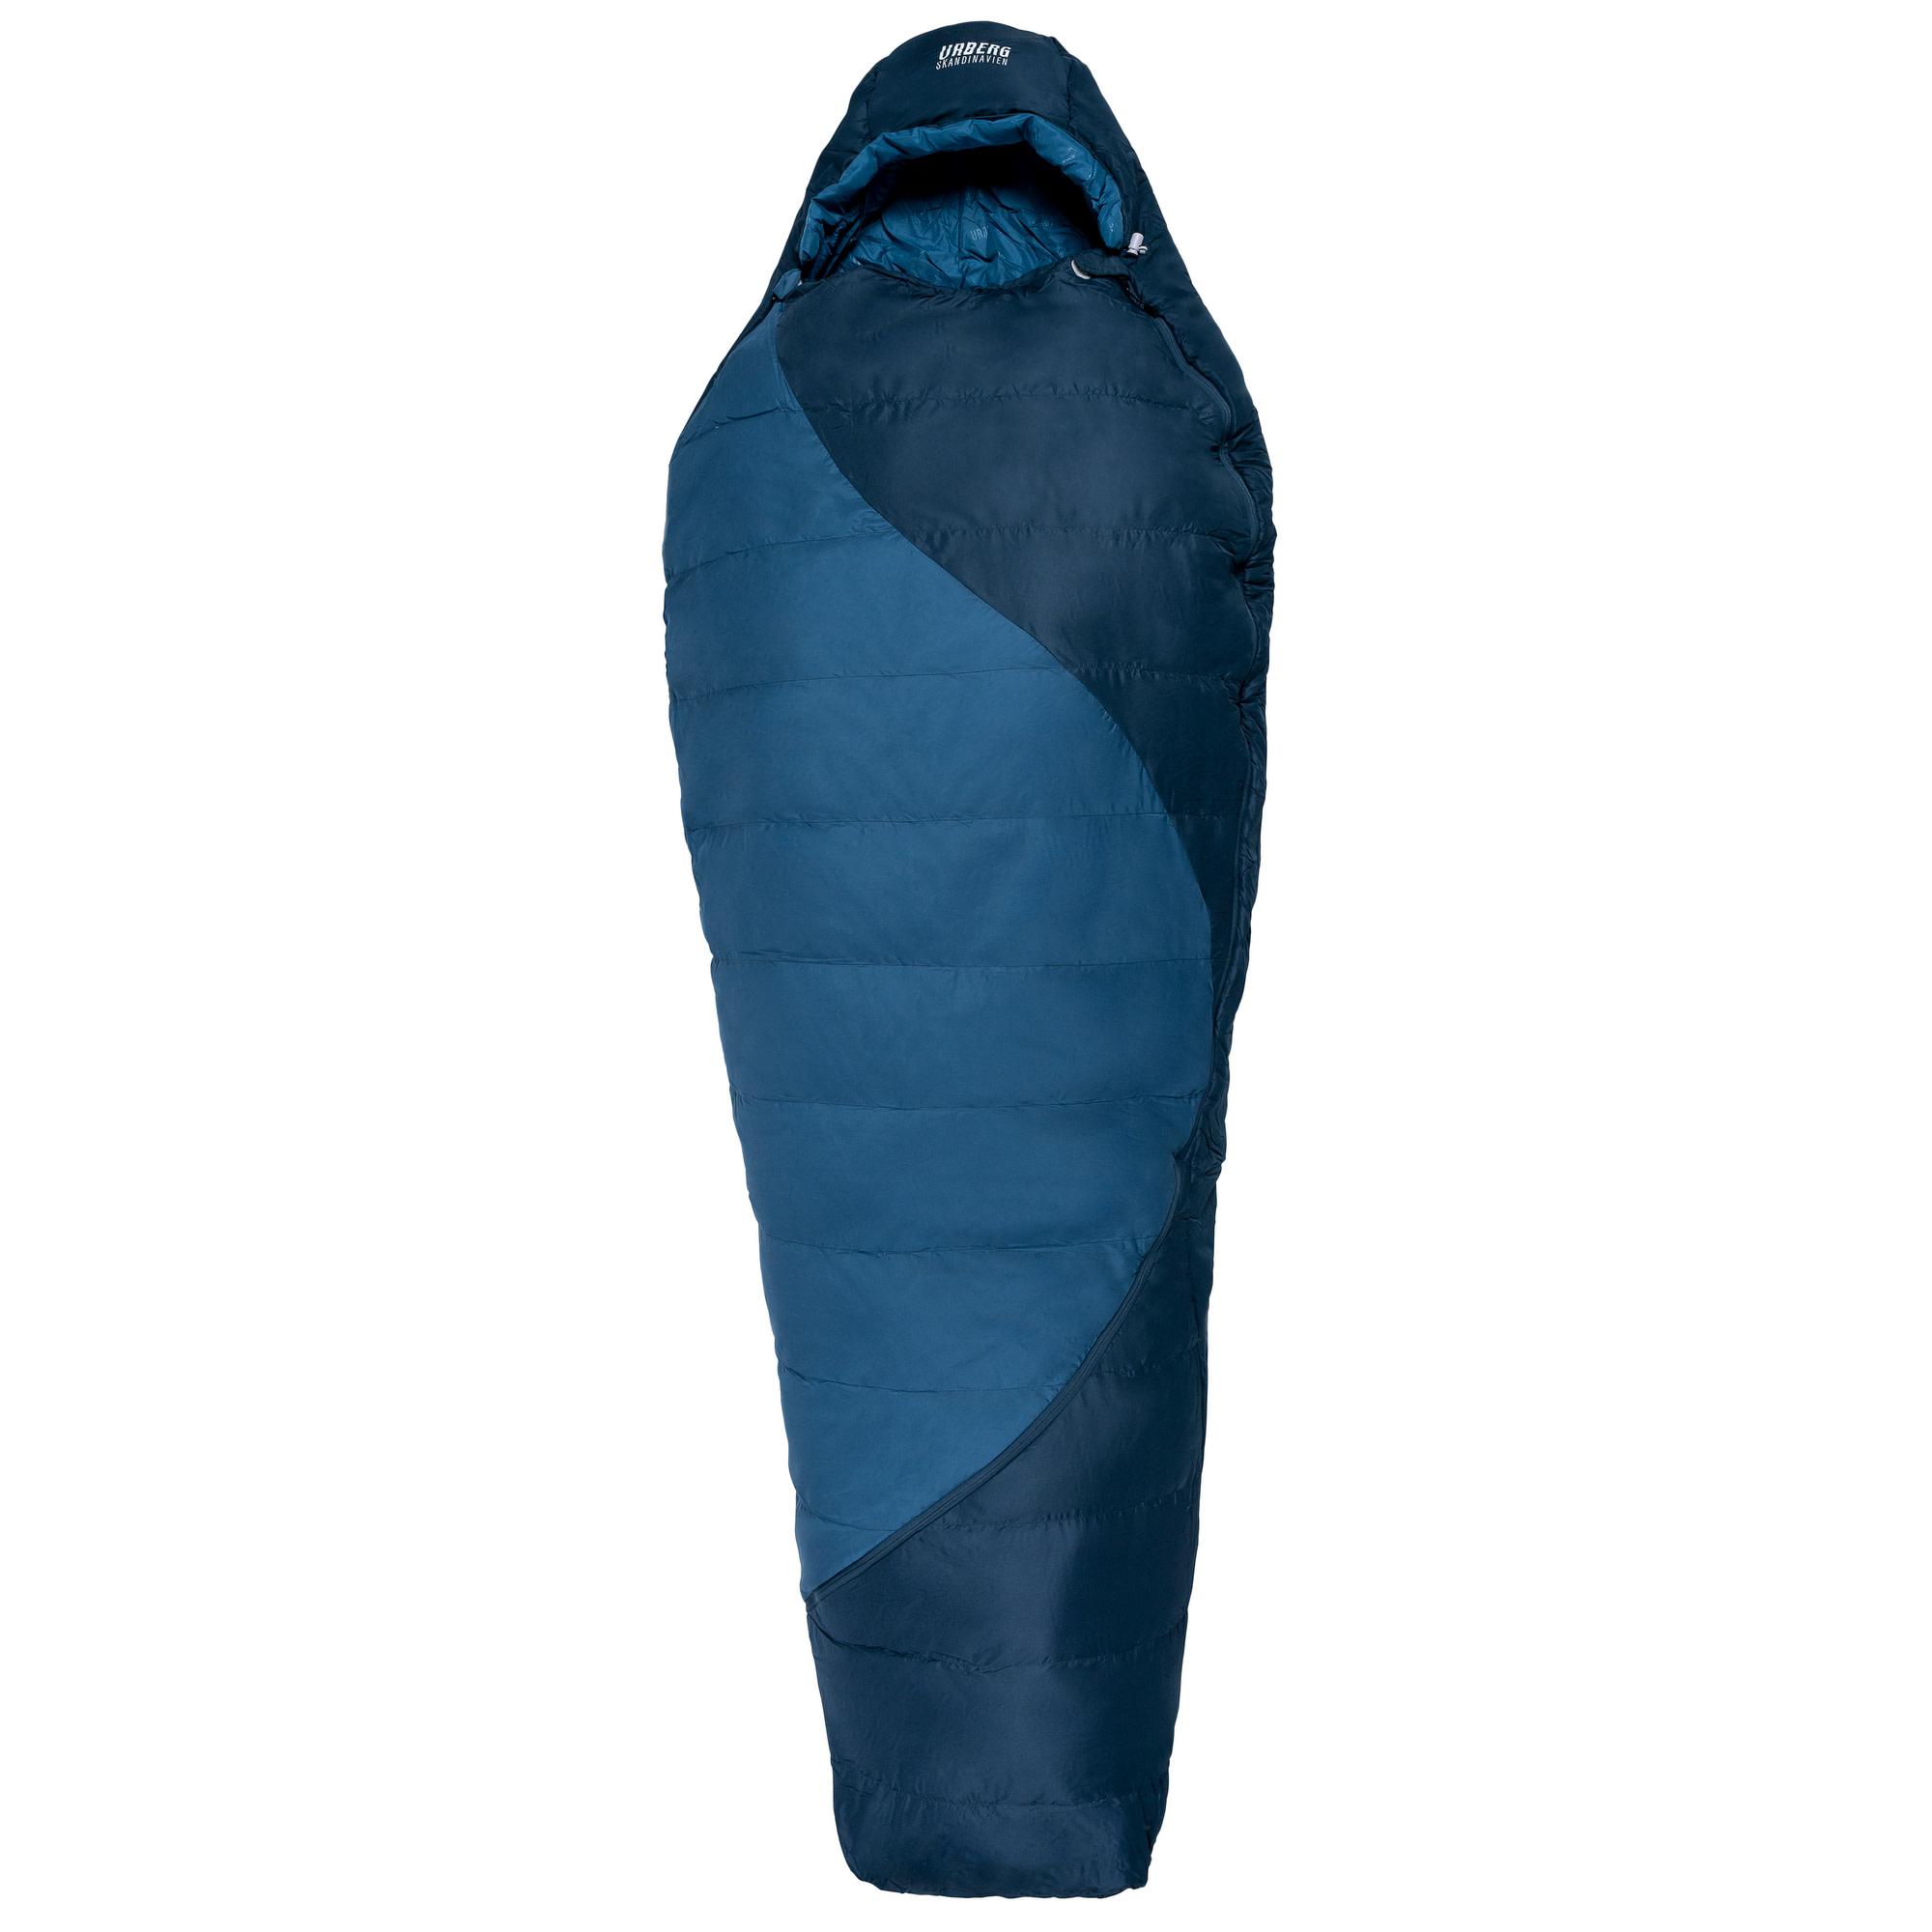 Ritsem Hybrid Sleepingbag 5°C Midnight Navy/Mallard Blue